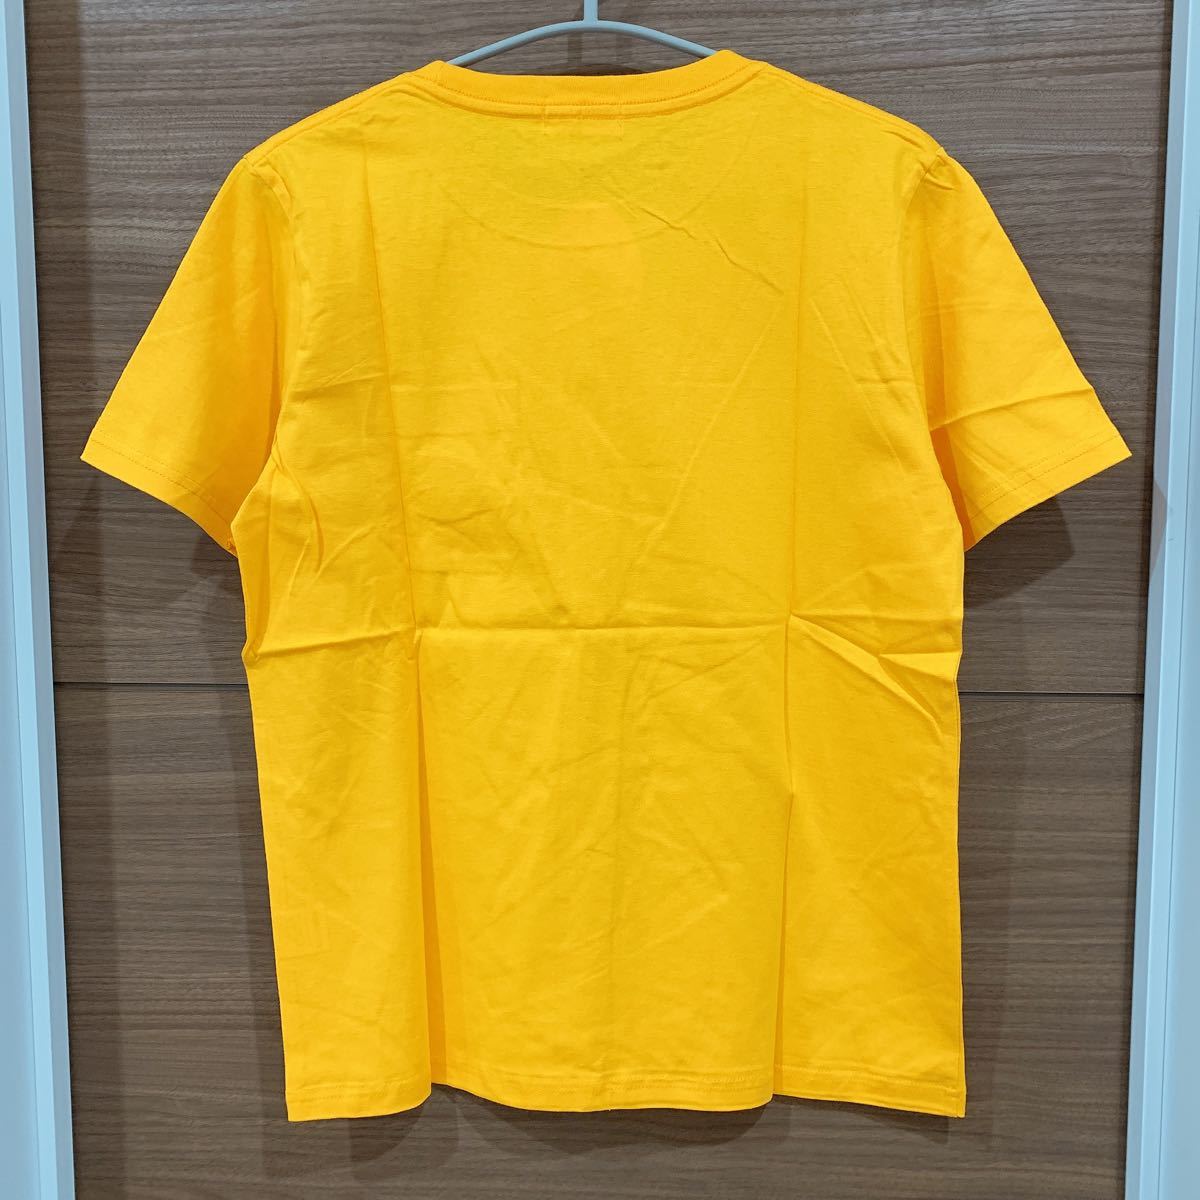 【SALE】【M】ぐでたま Tシャツ 半袖Tシャツ 夏物 サンリオ メンズ